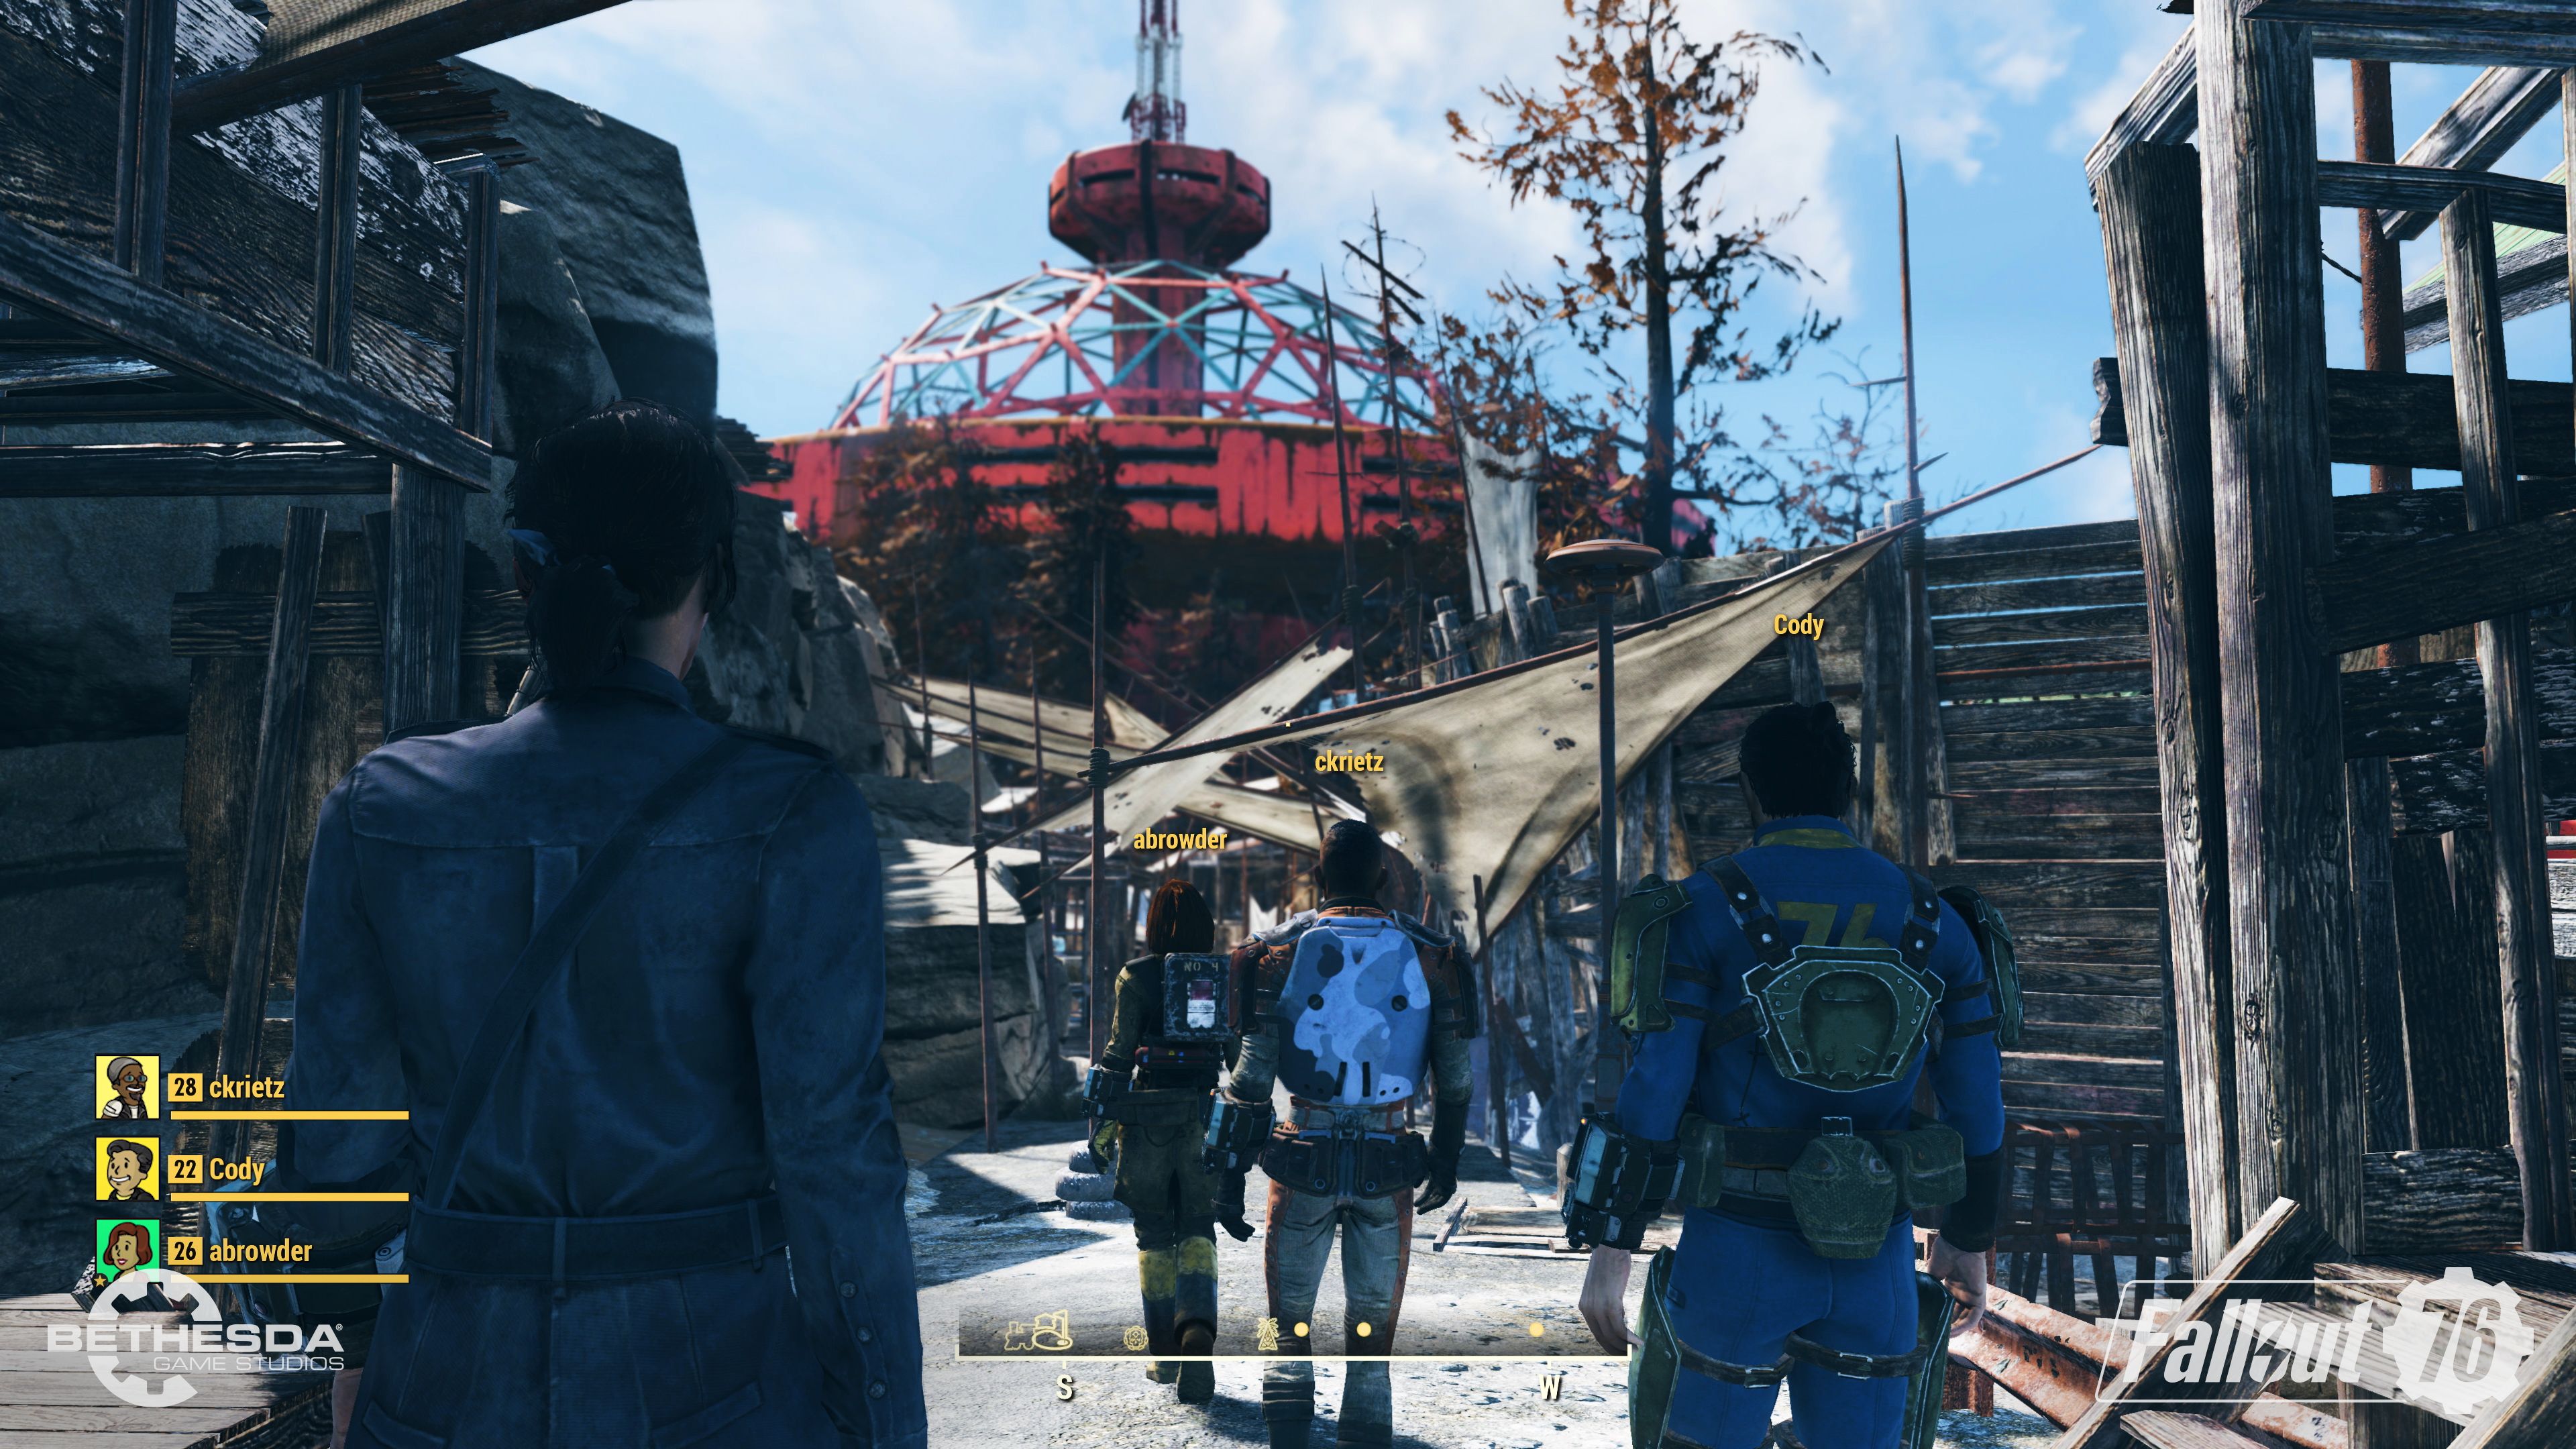 E32018 | Descubre todos los detalles sobre el nuevo Fallout 76 | Presentada la carátula final y nuevas imágenes in-game a 4K